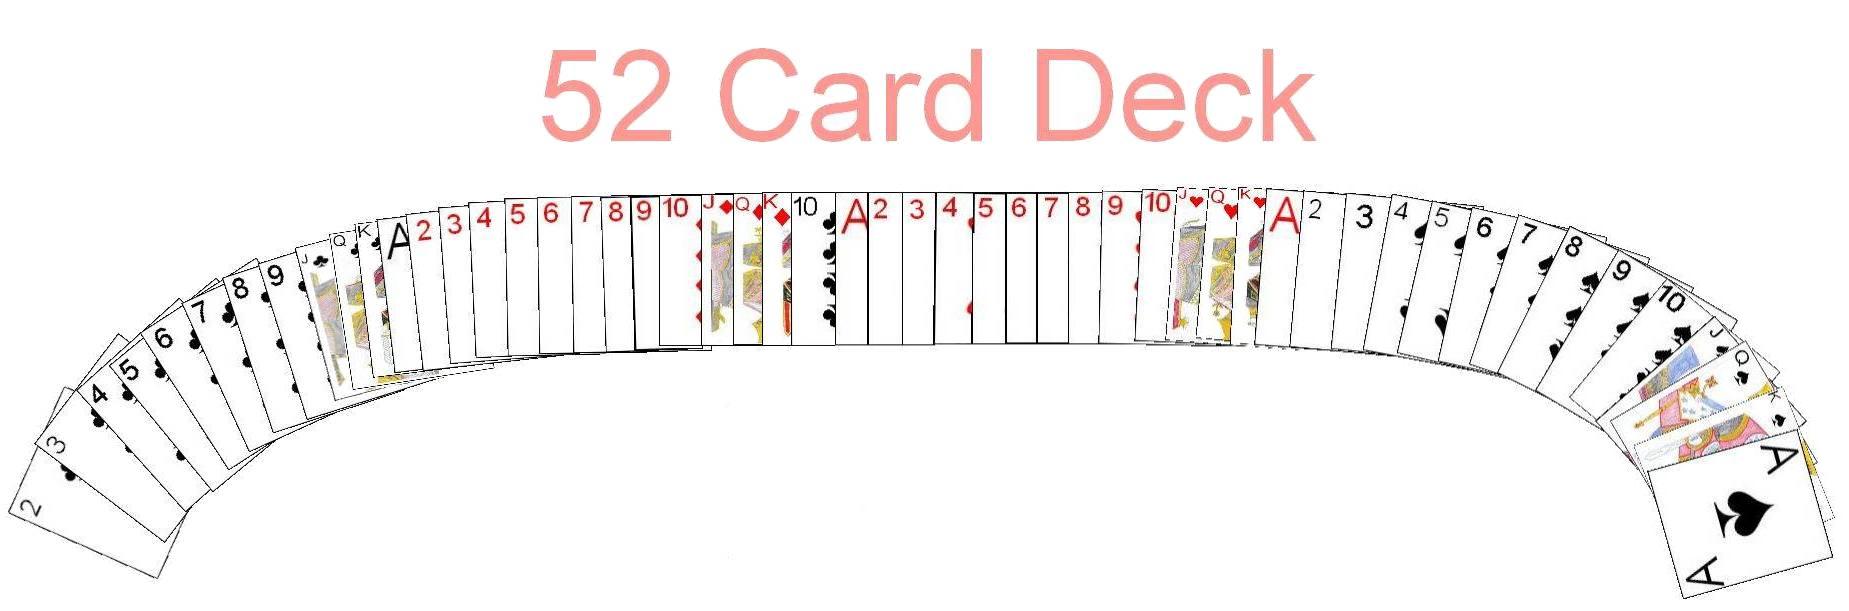 A standard 52 card deck